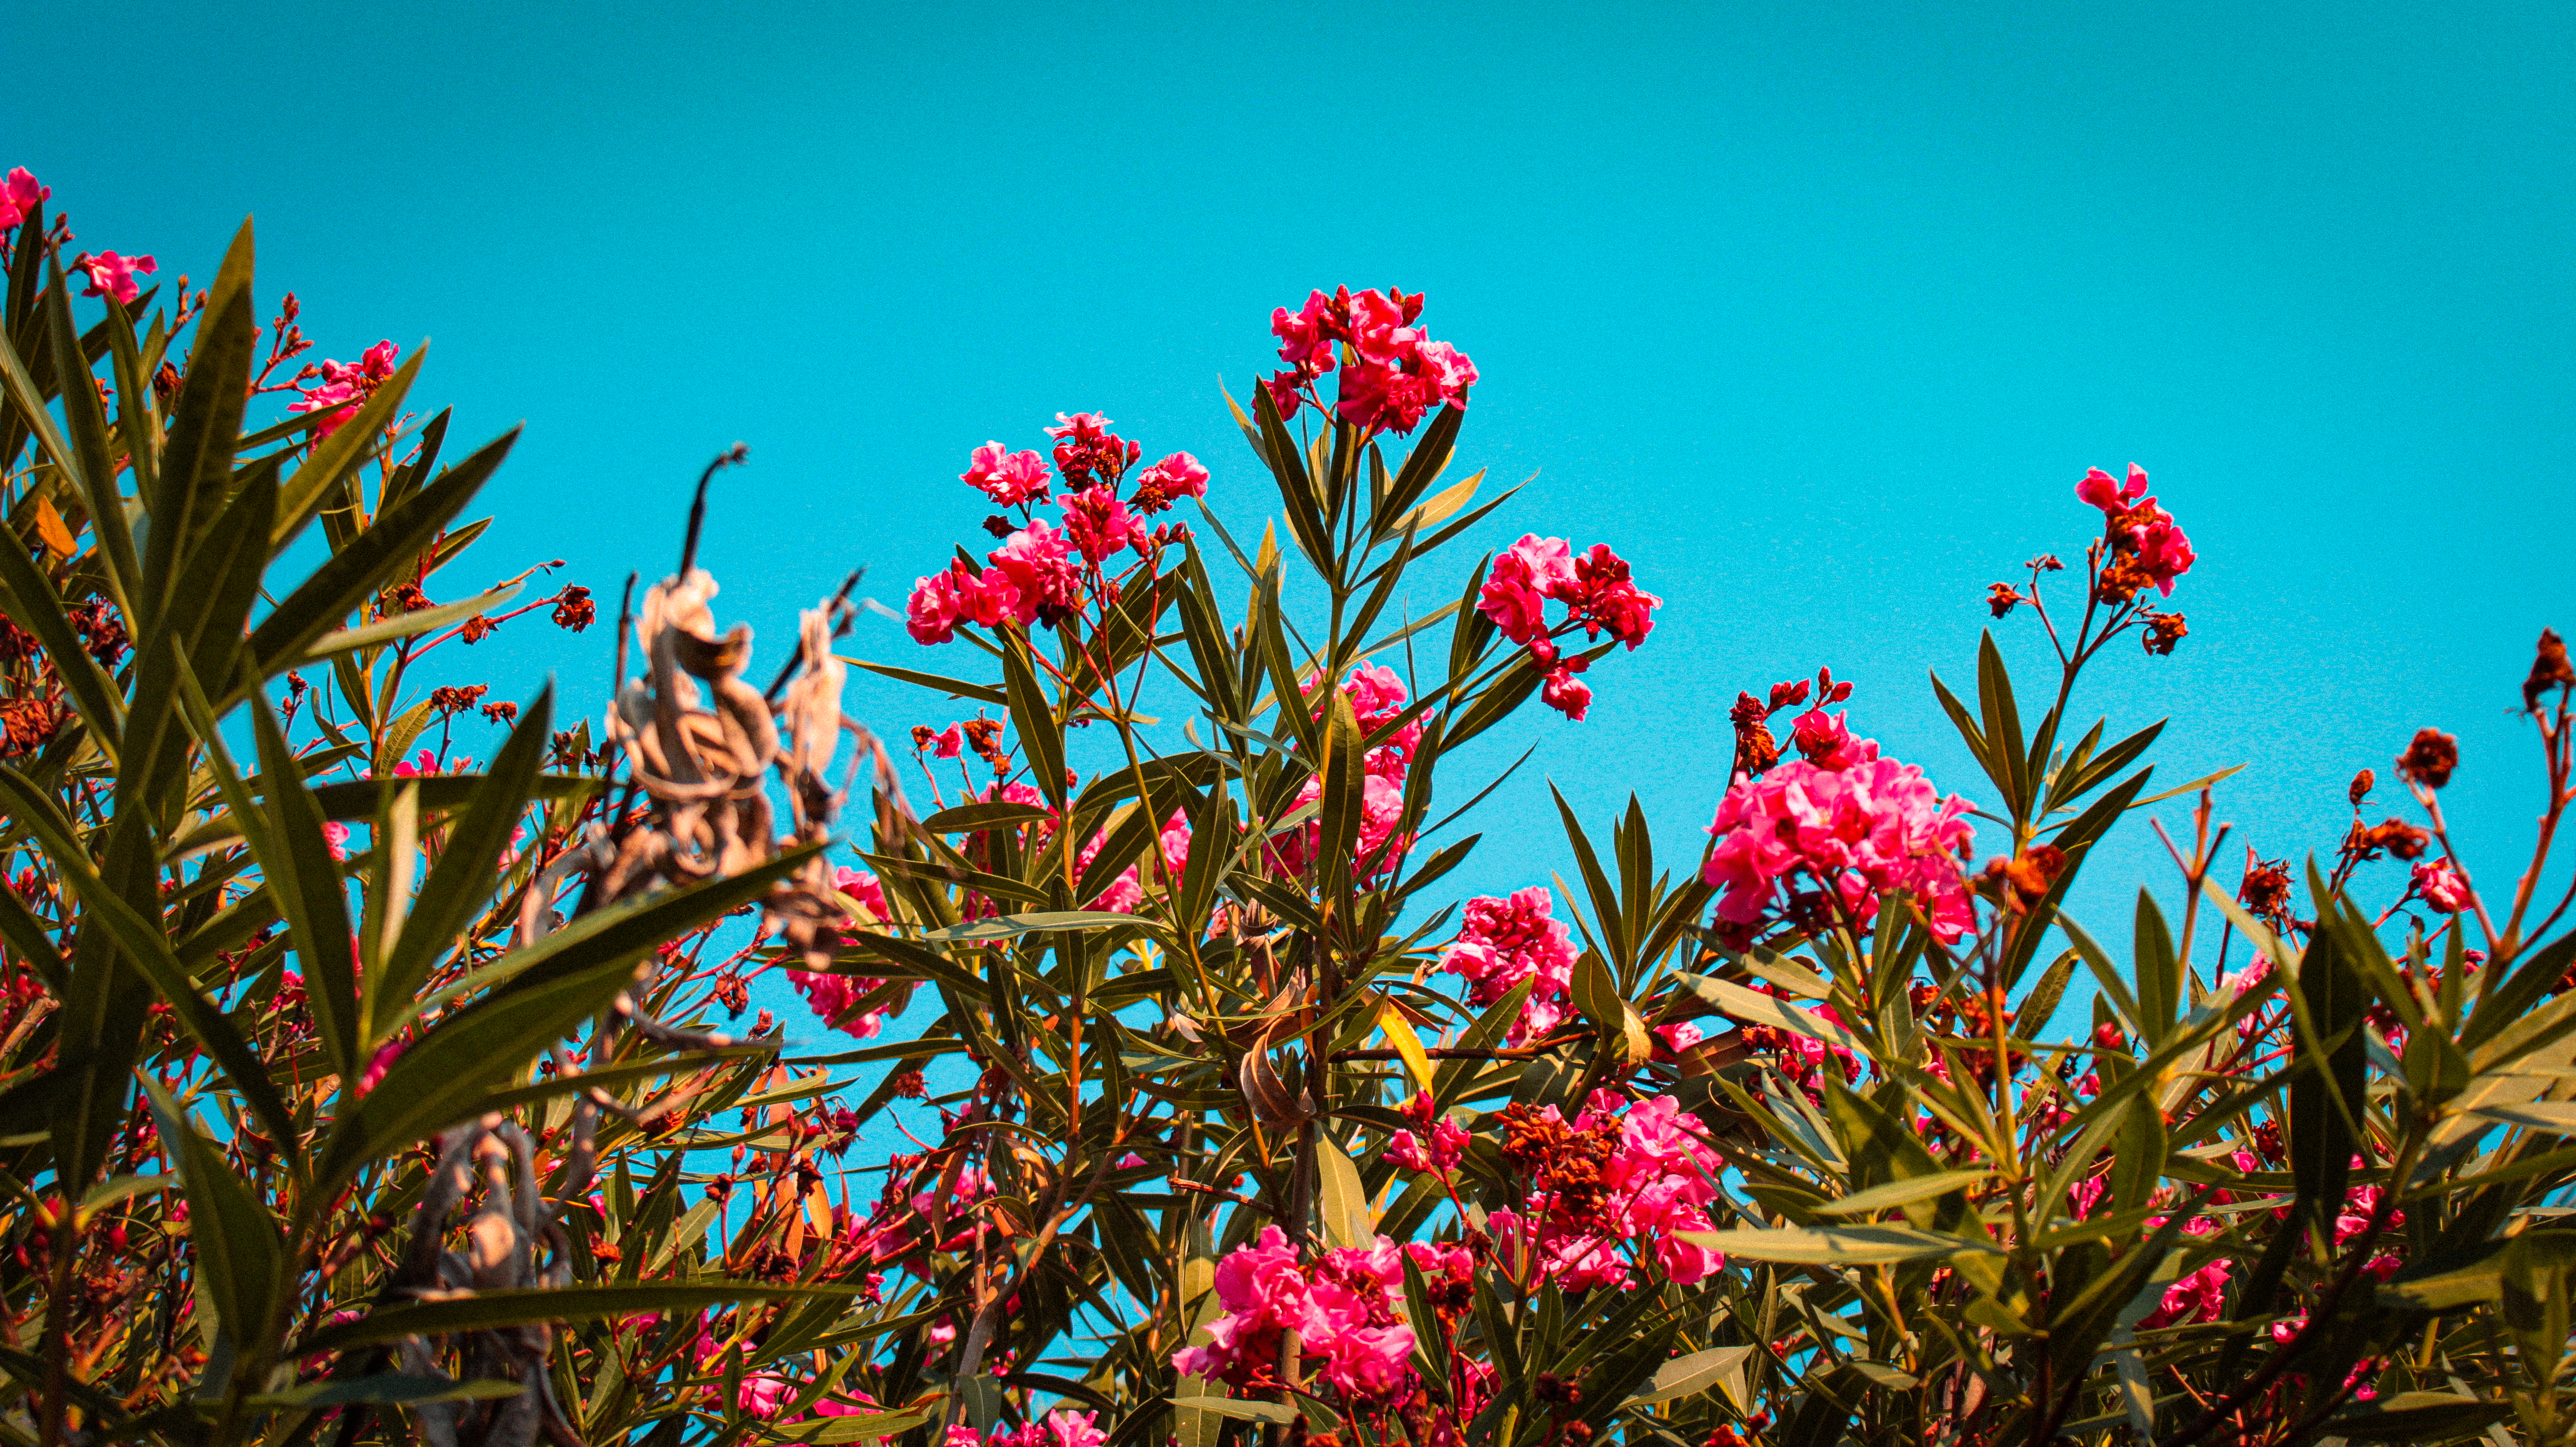 Schone Blumen gegen einen blauen Himmel